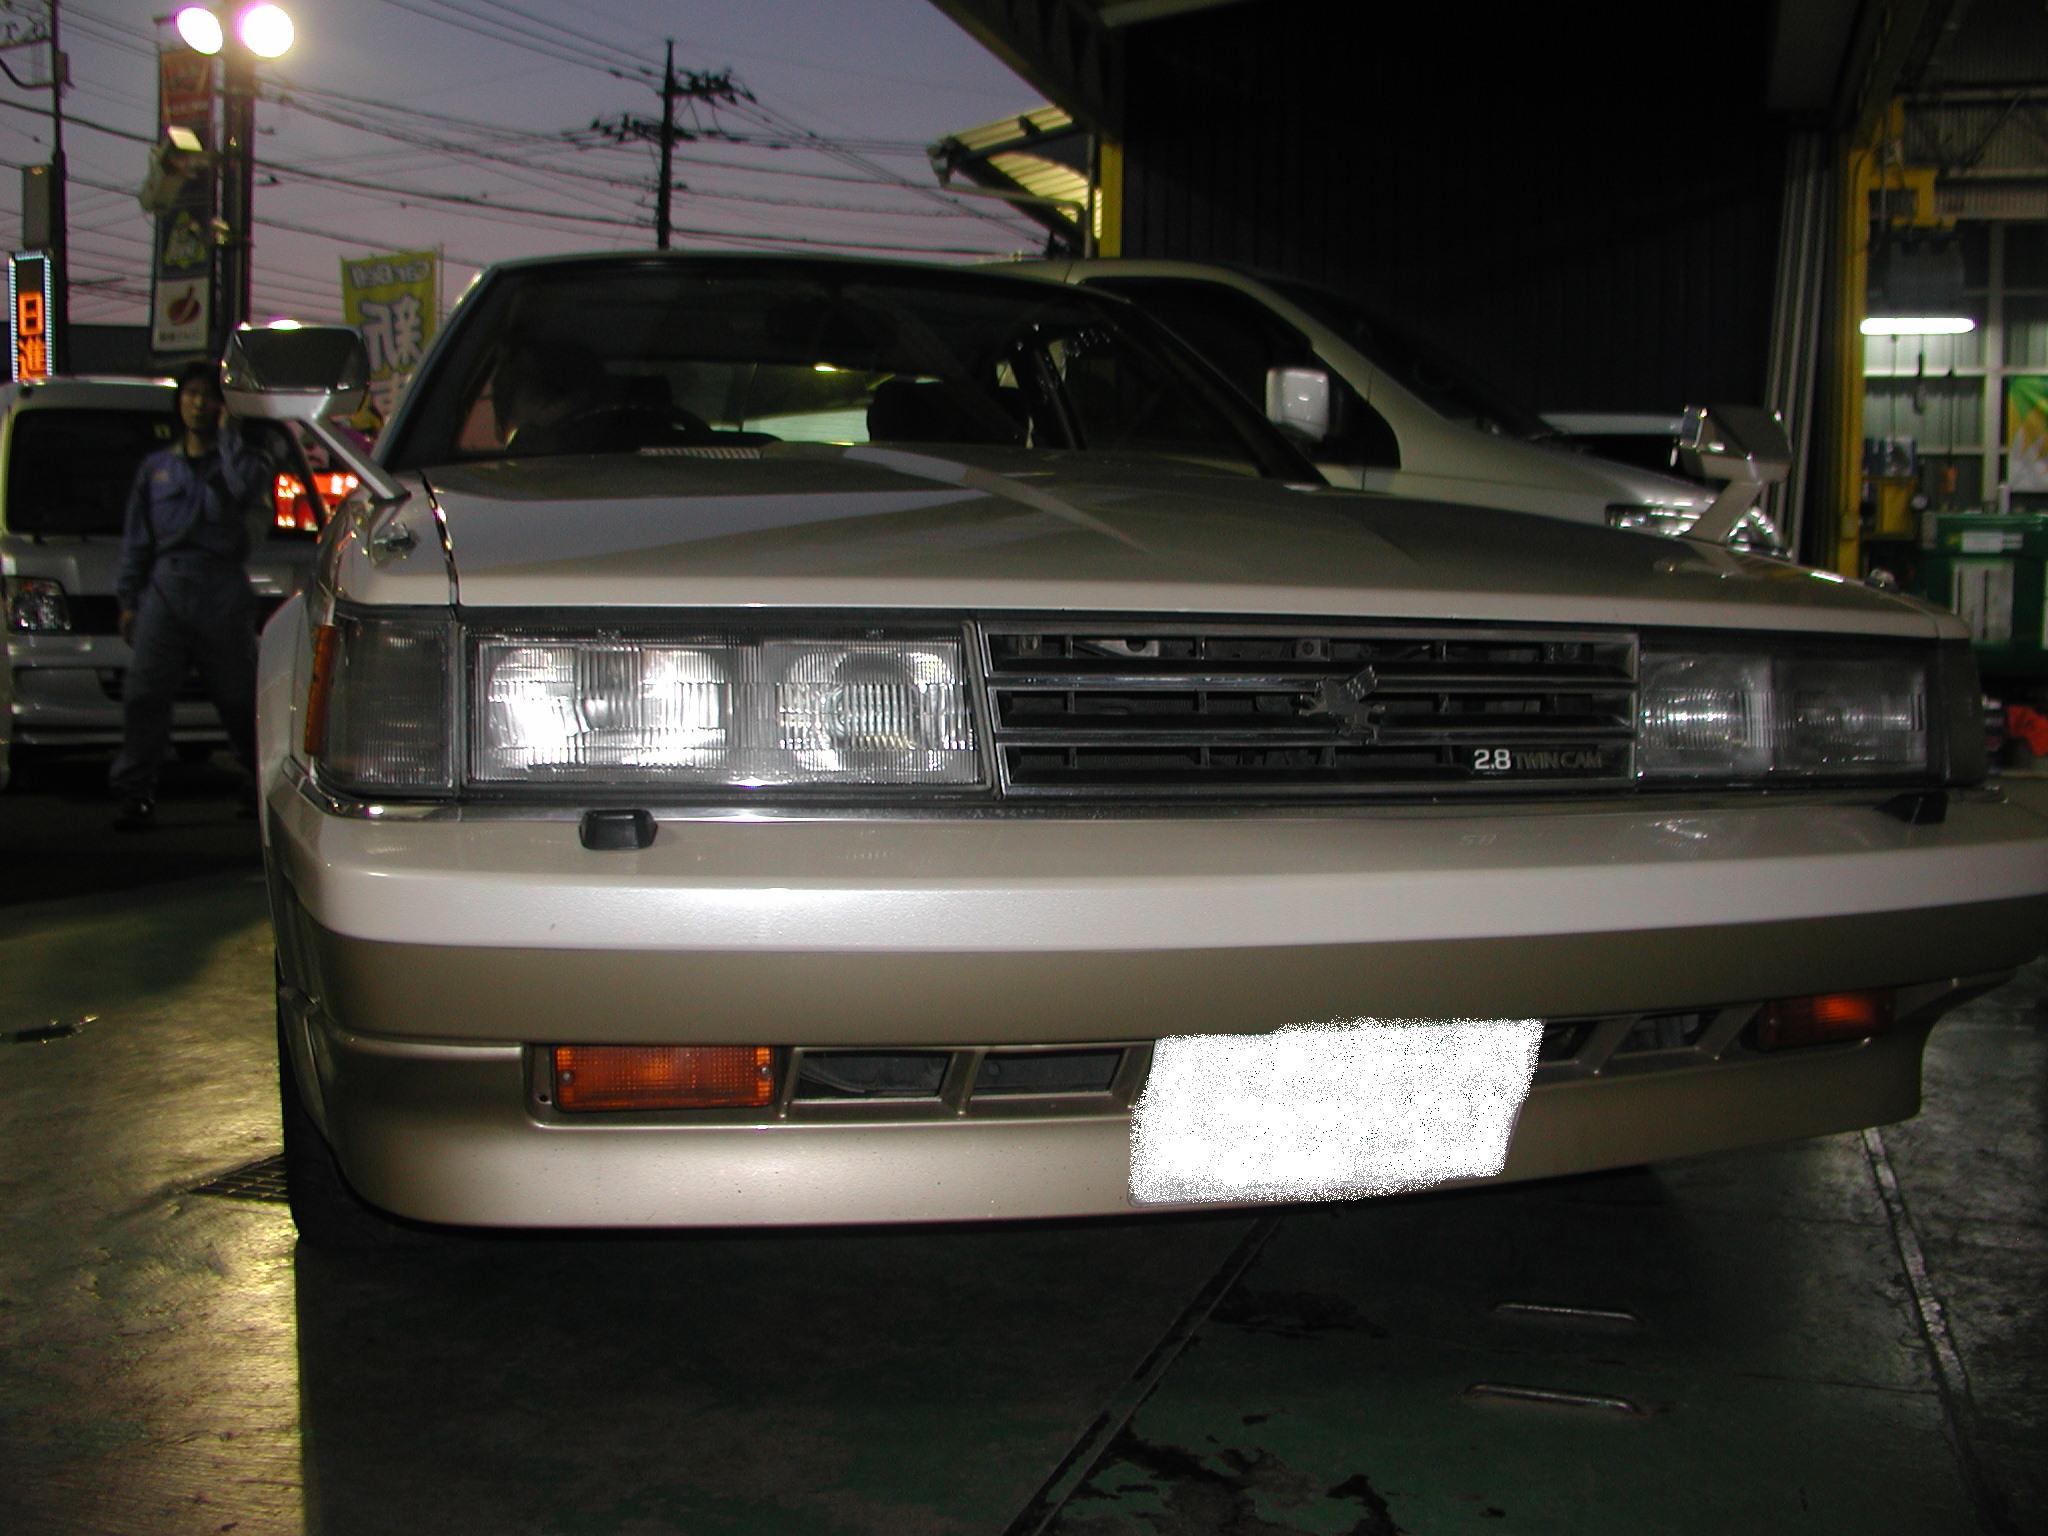 私と同年代の車 東久留米 日進自動車 整備 カーナビ カー用品取付け 板金塗装 実例集